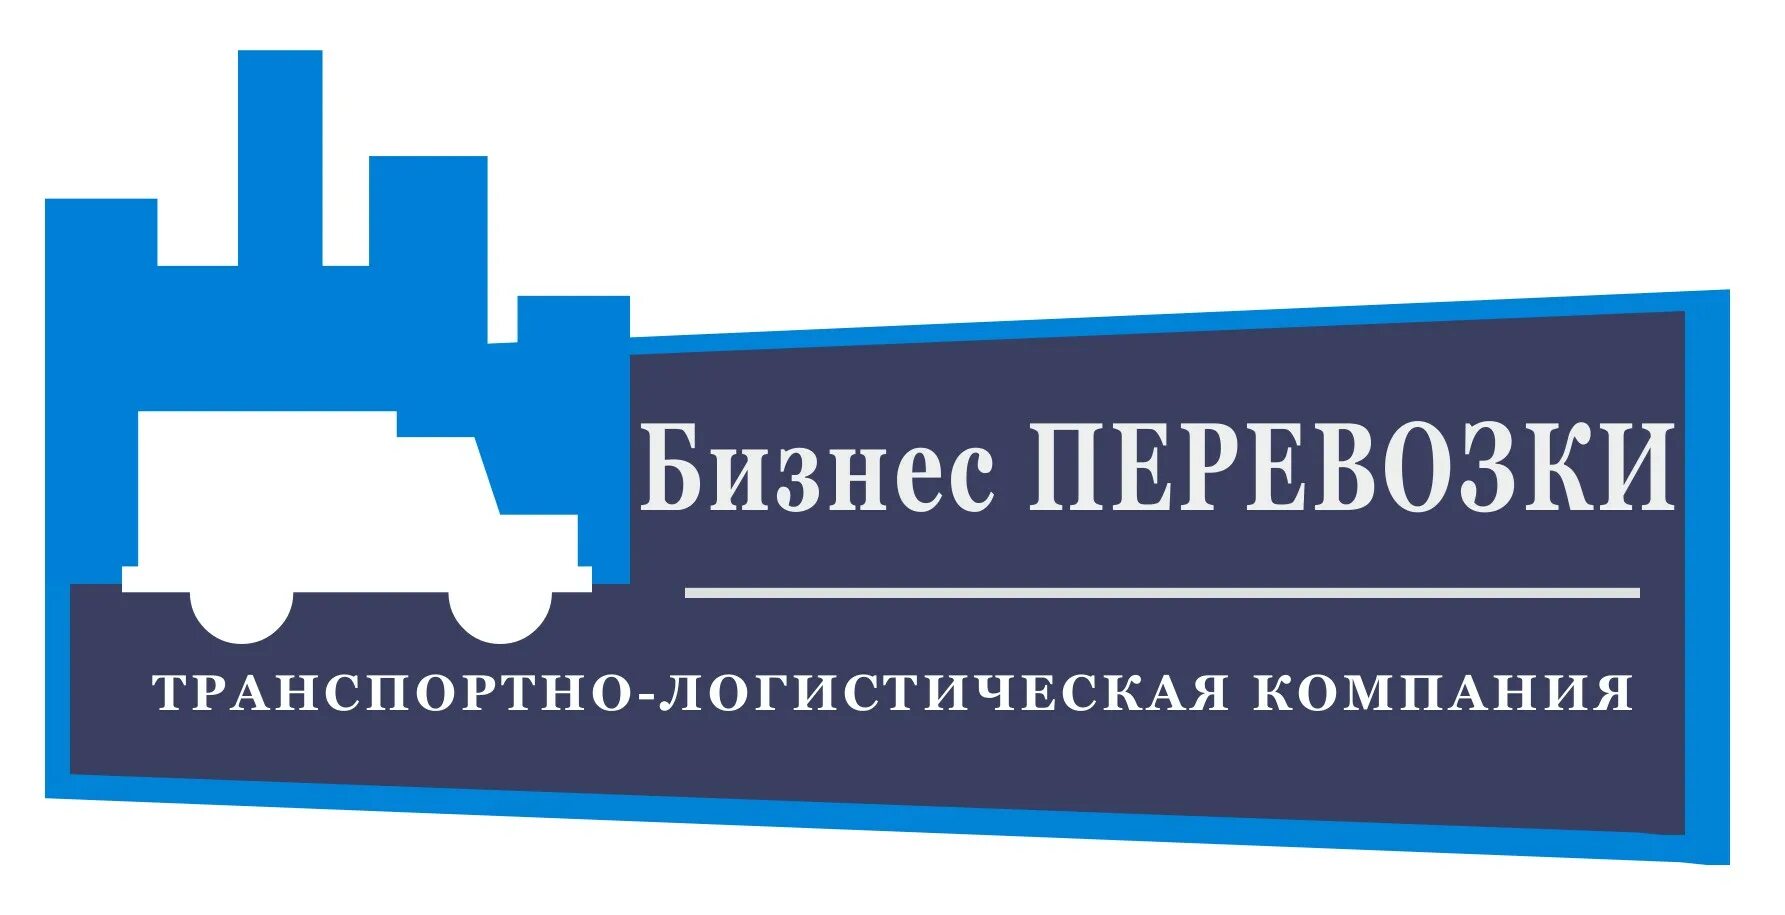 Транспортно-экспедиционная компания. Бизнес транспортная компания. Логистические компании Владивосток. Камская логистика транспортная компания.